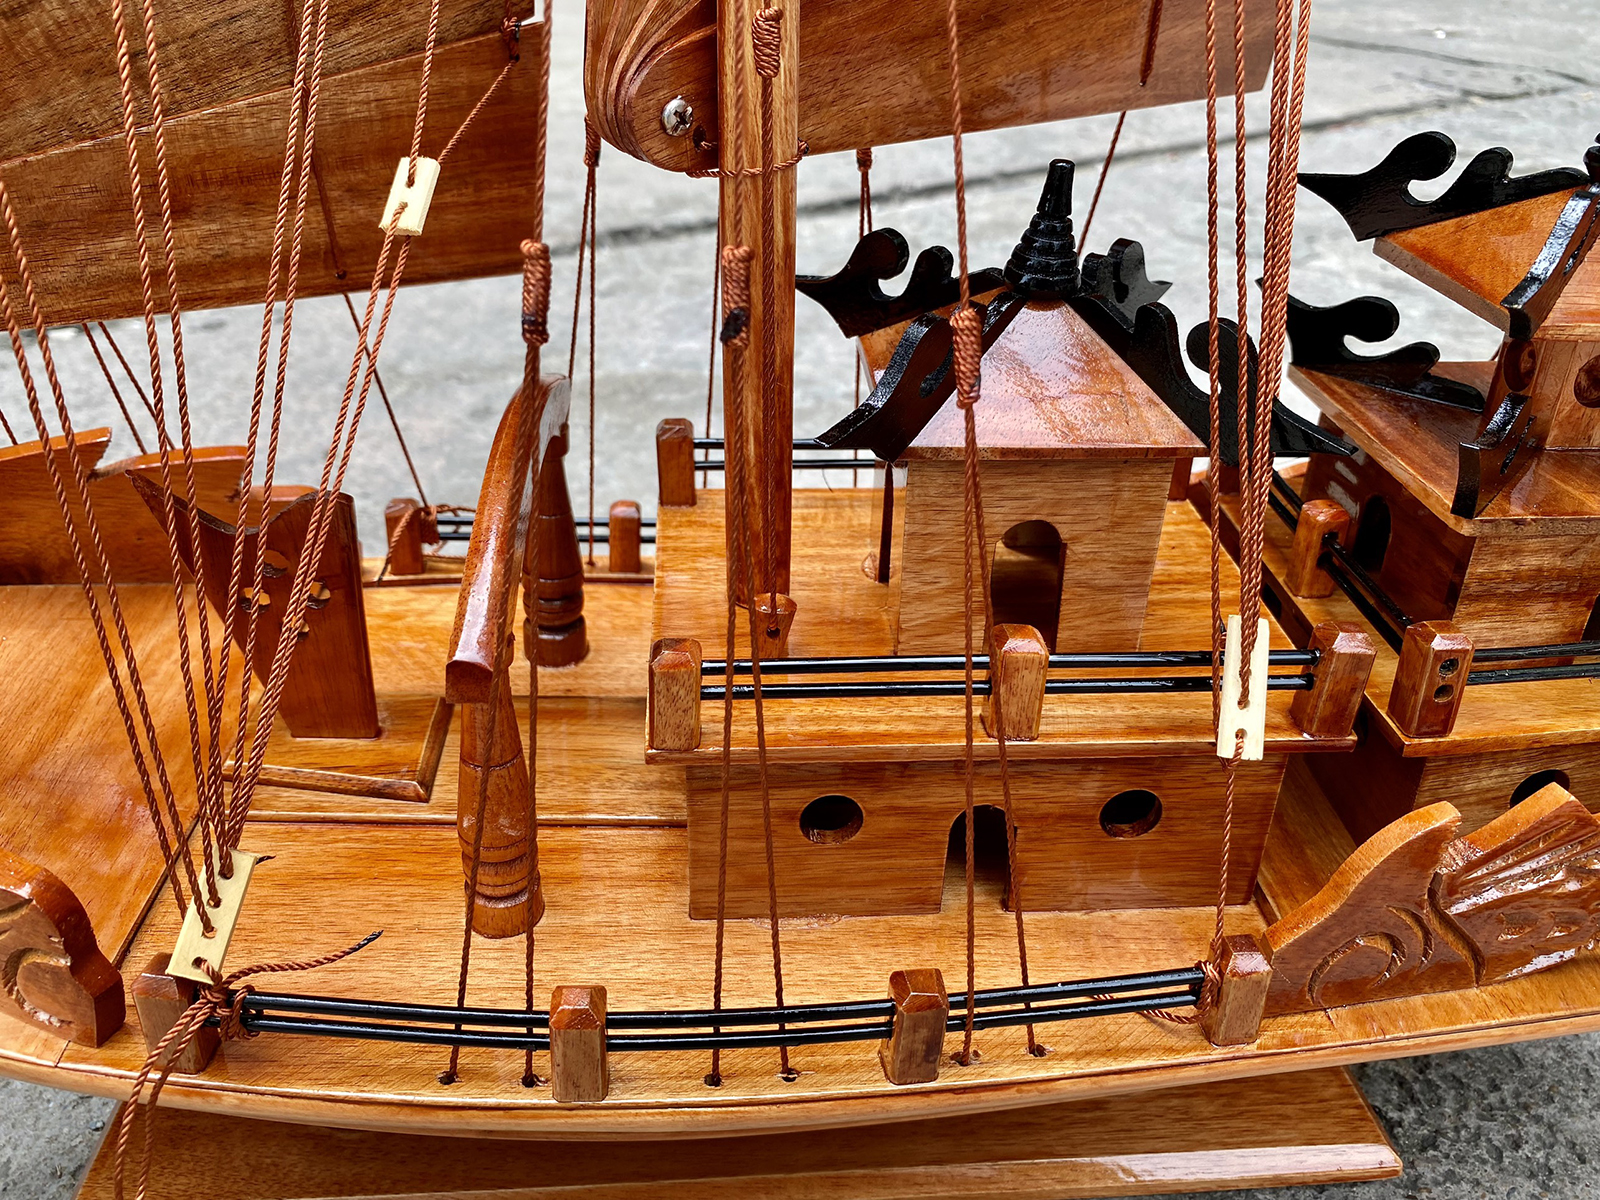 Mô hình thuyền gỗ phong thủy Rồng Hạ Long 60cm, thuyền buồm Việt Nam trang trí gỗ tự nhiên, quà tặng đối tác nước ngoài